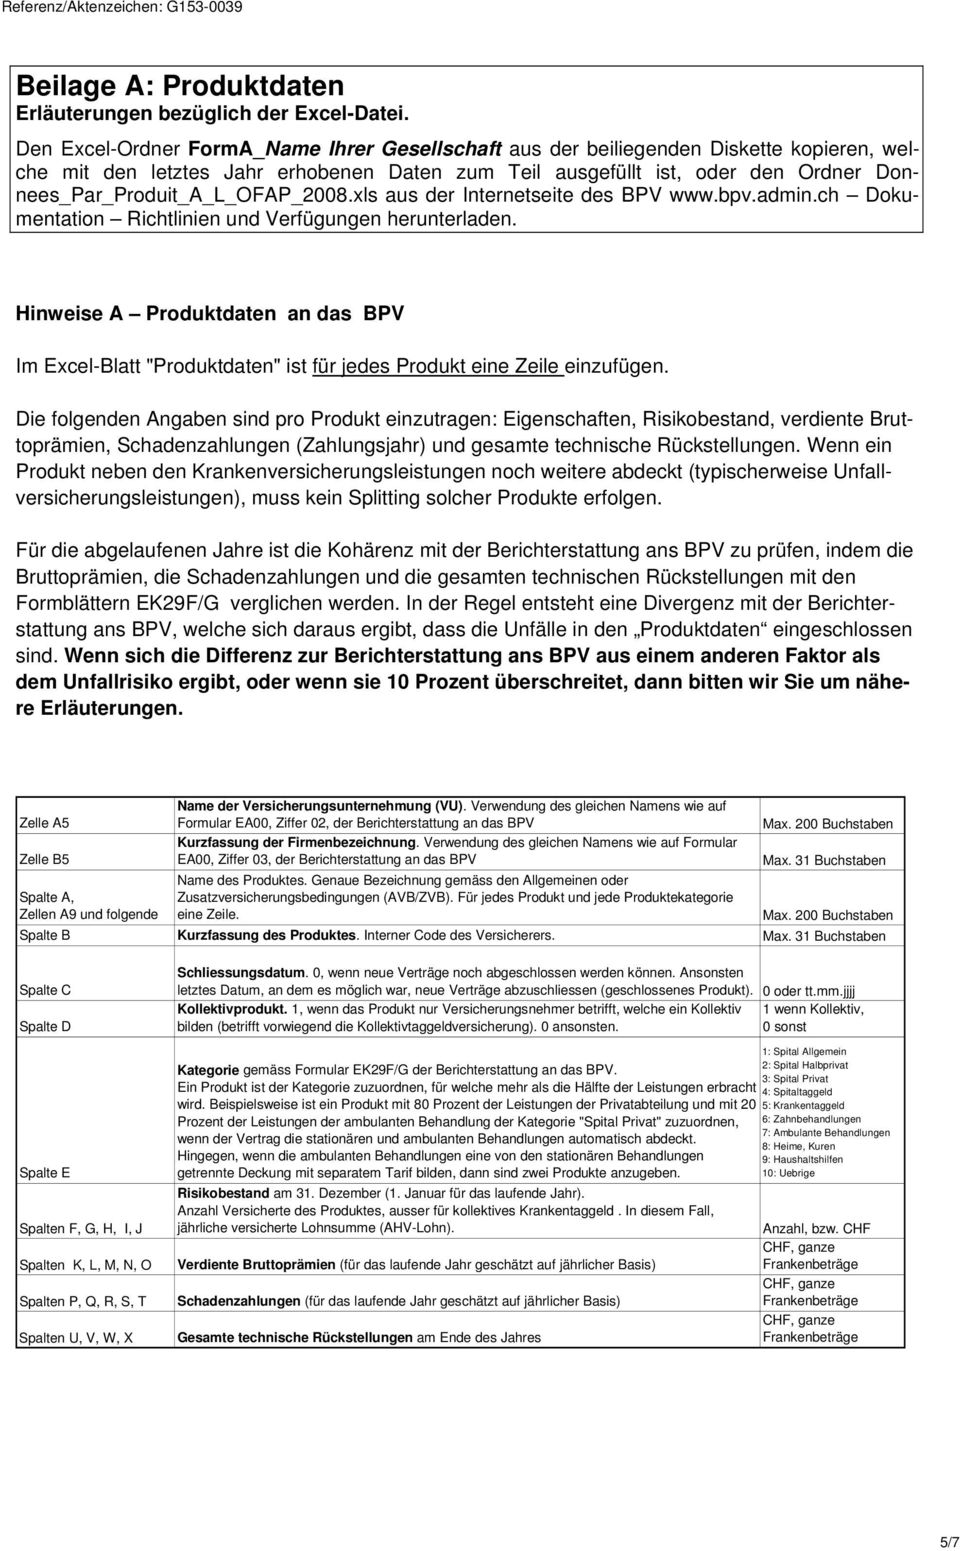 Donnees_Par_Produit_A_L_OFAP_2008.xls aus der Internetseite des BPV www.bpv.admin.ch Dokumentation Richtlinien und Verfügungen herunterladen.